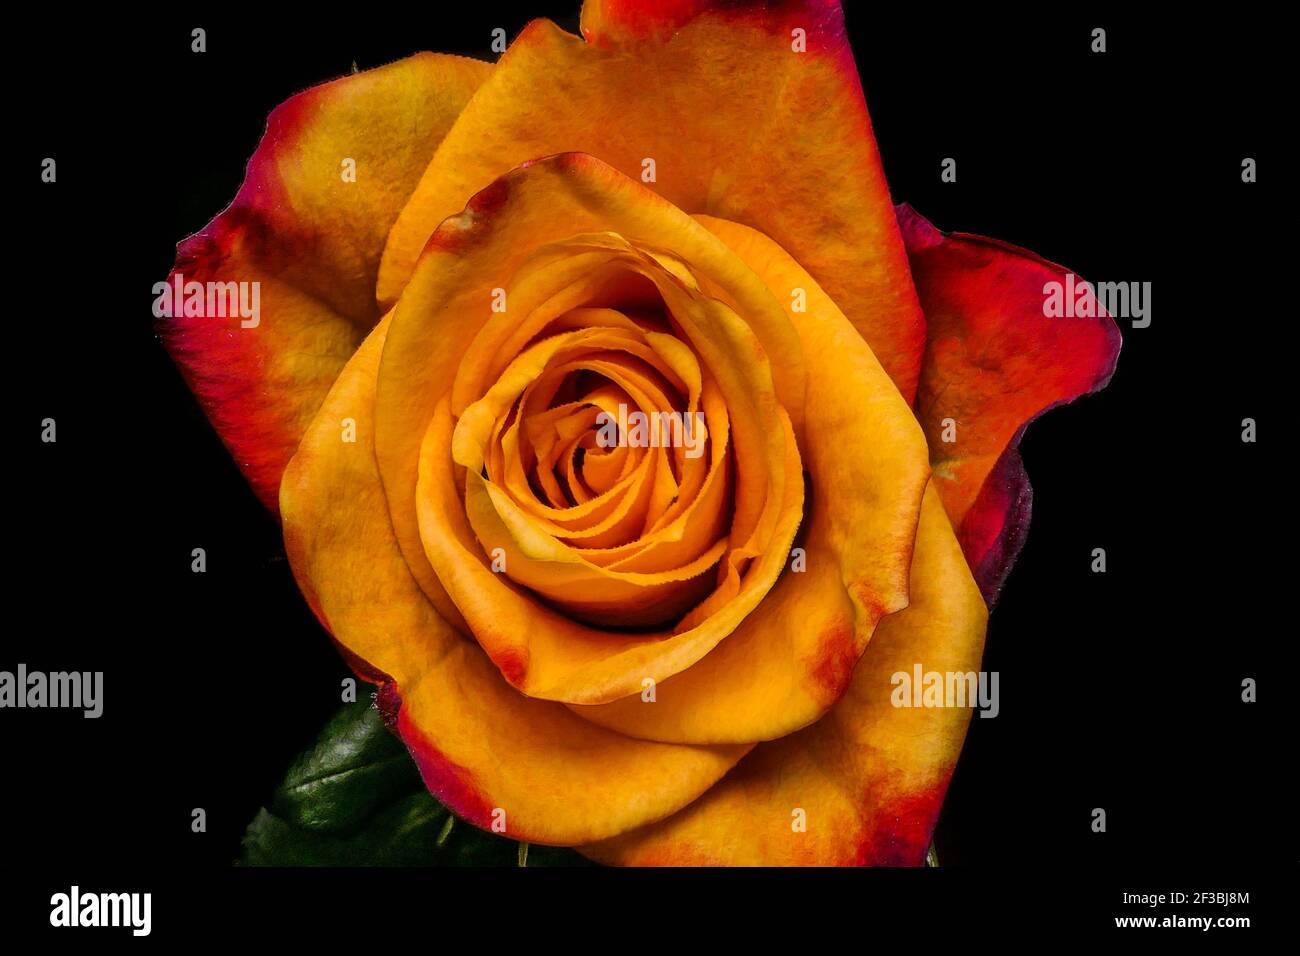 Penny Lane roses. yellow rose isolated on black background Stock Photo -  Alamy